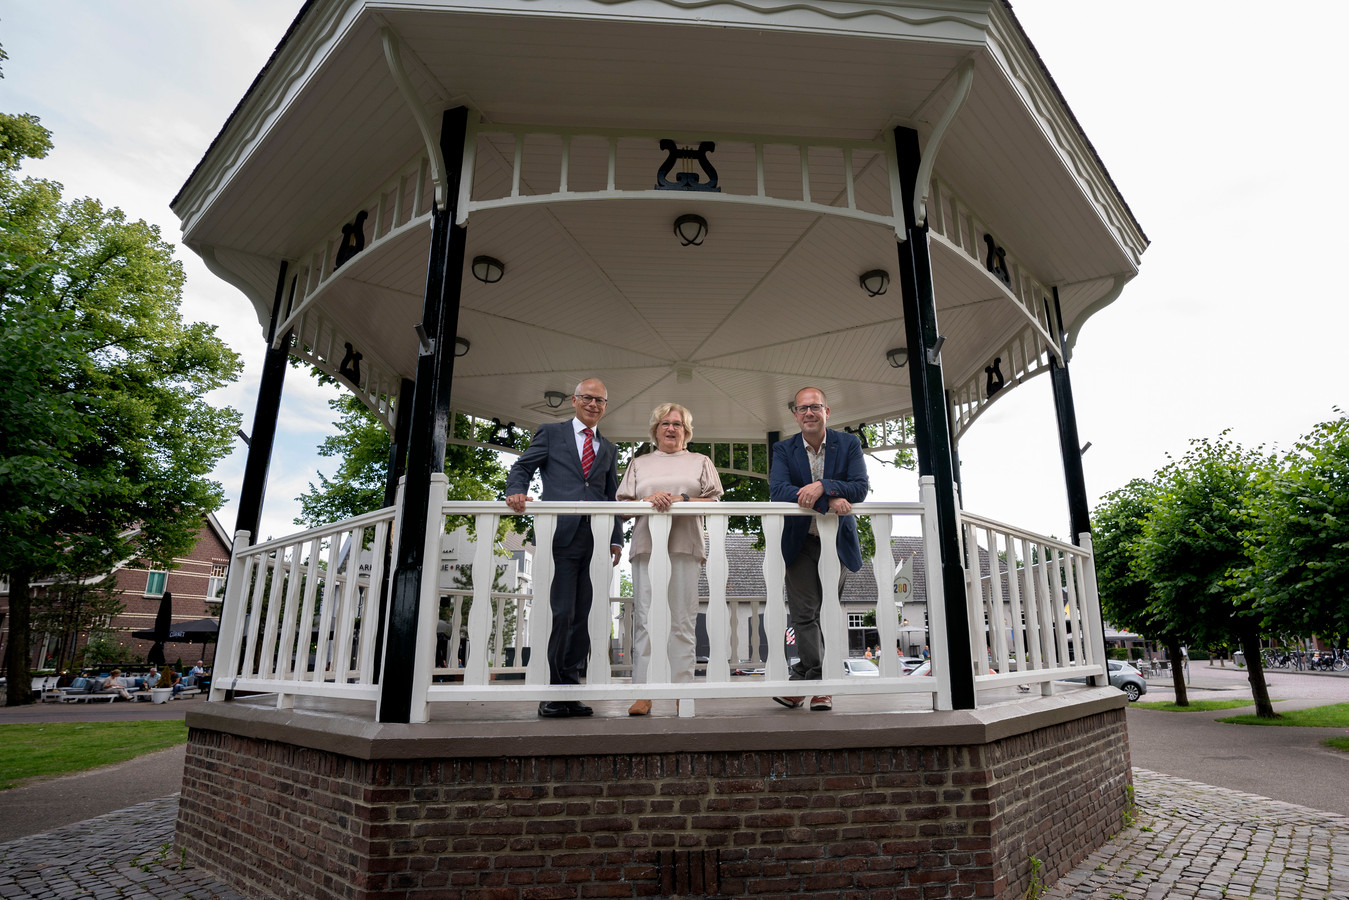 De Nuenense wethouders Sandor Löwik, Bertje van Stiphout en Ralf Stultiëns (vlnr) wachten nog altijd op de vierde wethouder.